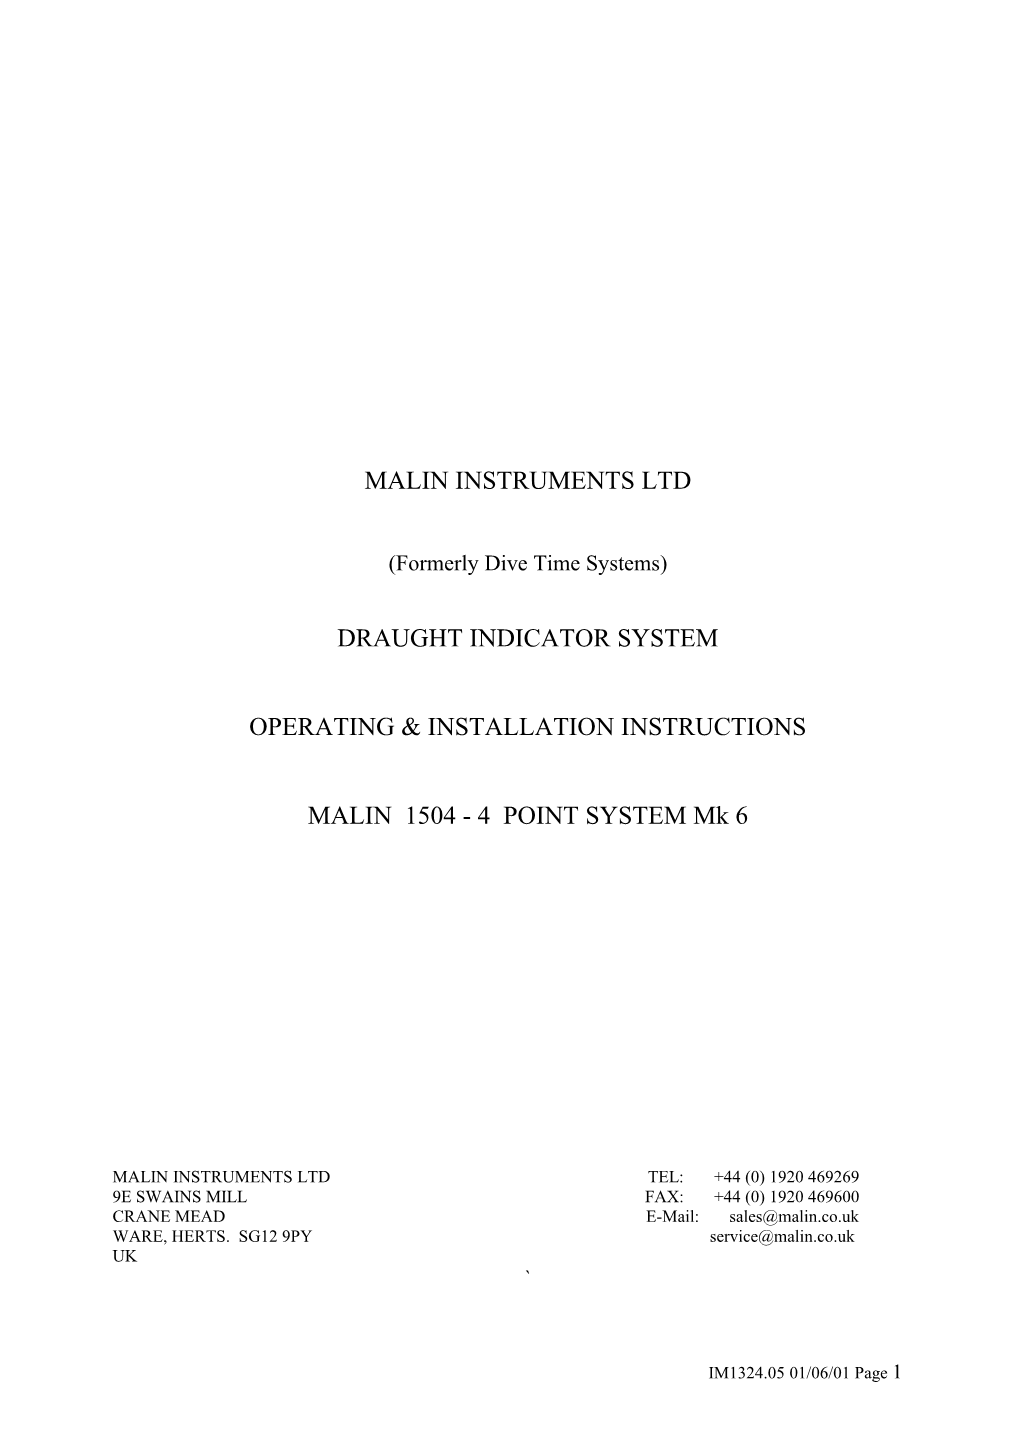 Malin Instruments Ltd